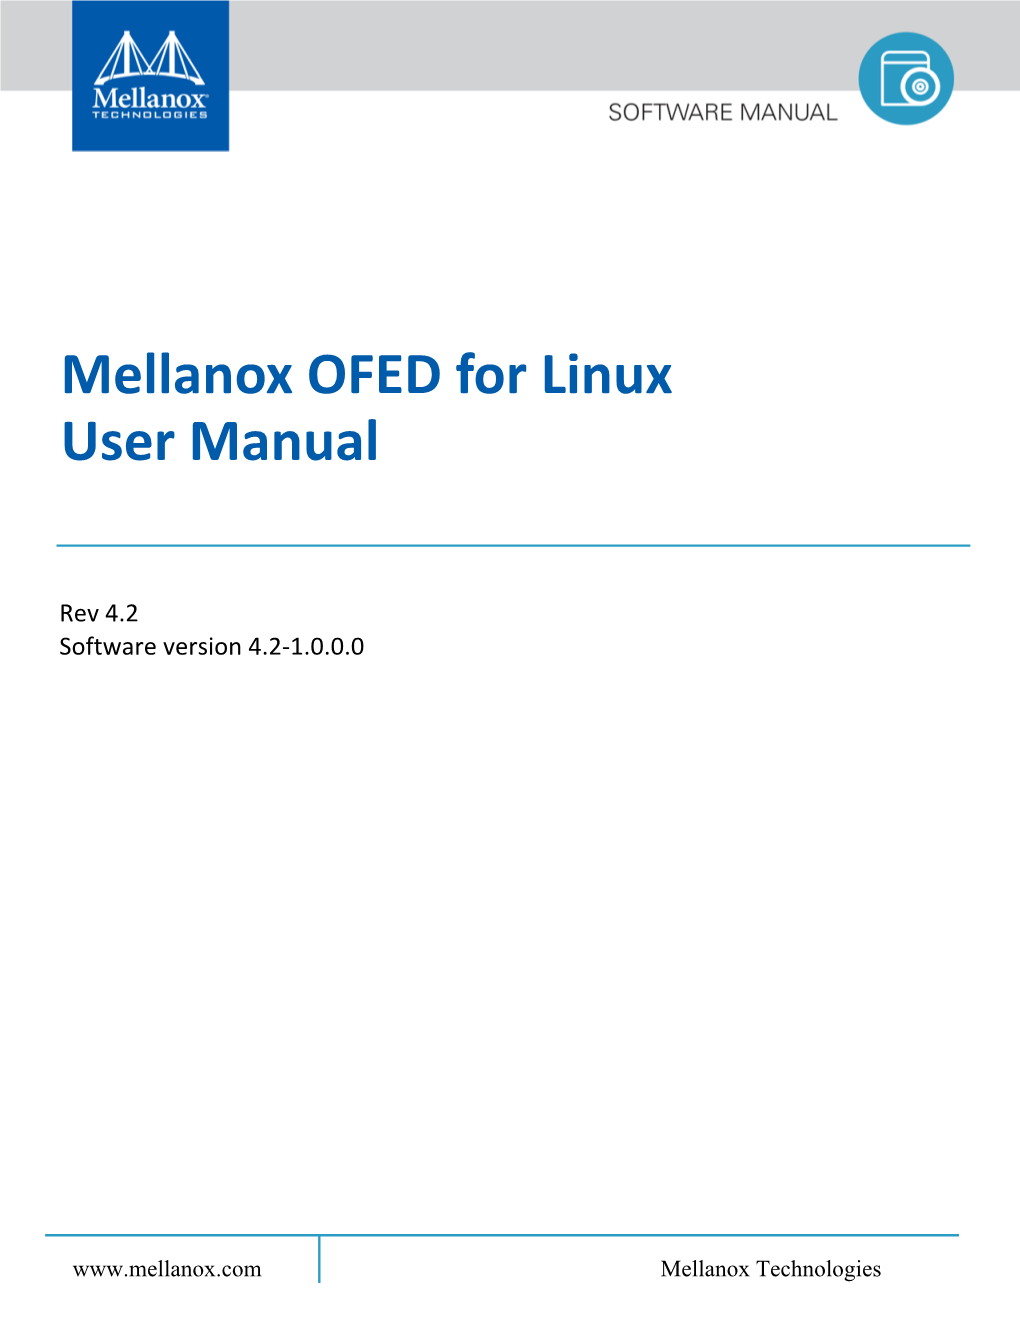 Mellanox EN Linux User's Manual